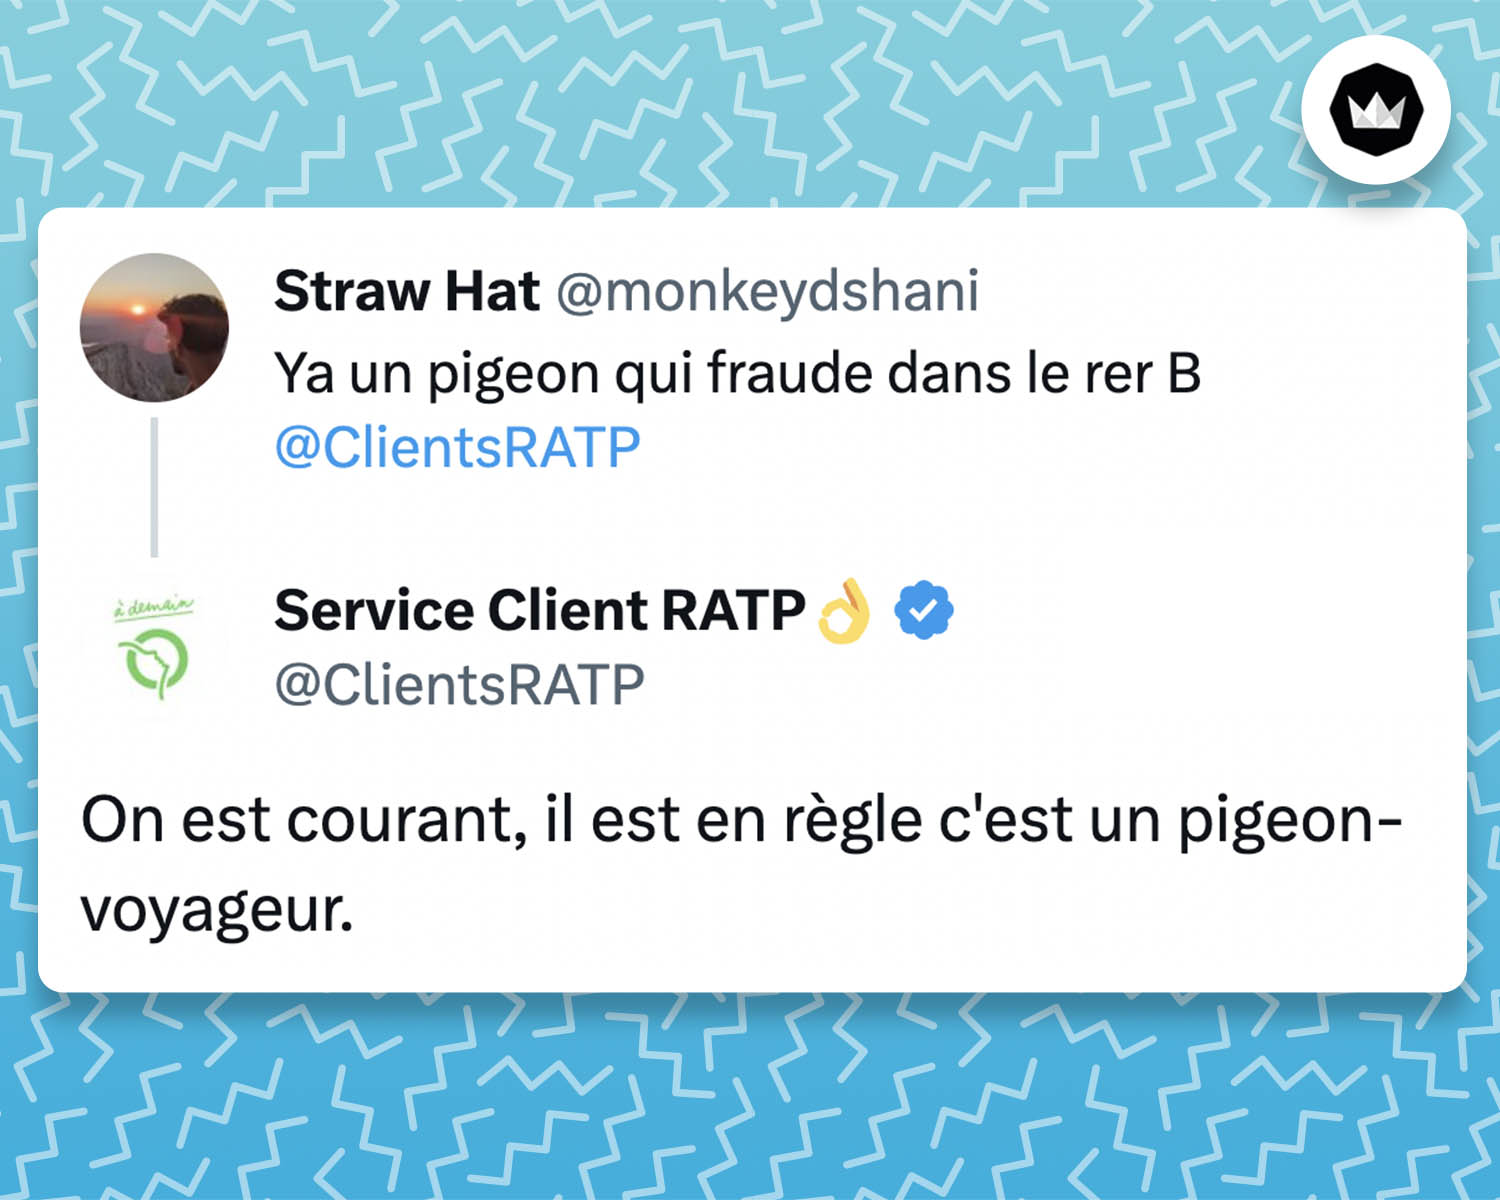 tweet du service client RATP : 
On est courant, il est en règle c'est un pigeon-voyageur.

Le service client répond à l'internaute @monkeydshani
 : Ya un pigeon qui fraude dans le rer B 
@ClientsRATP
